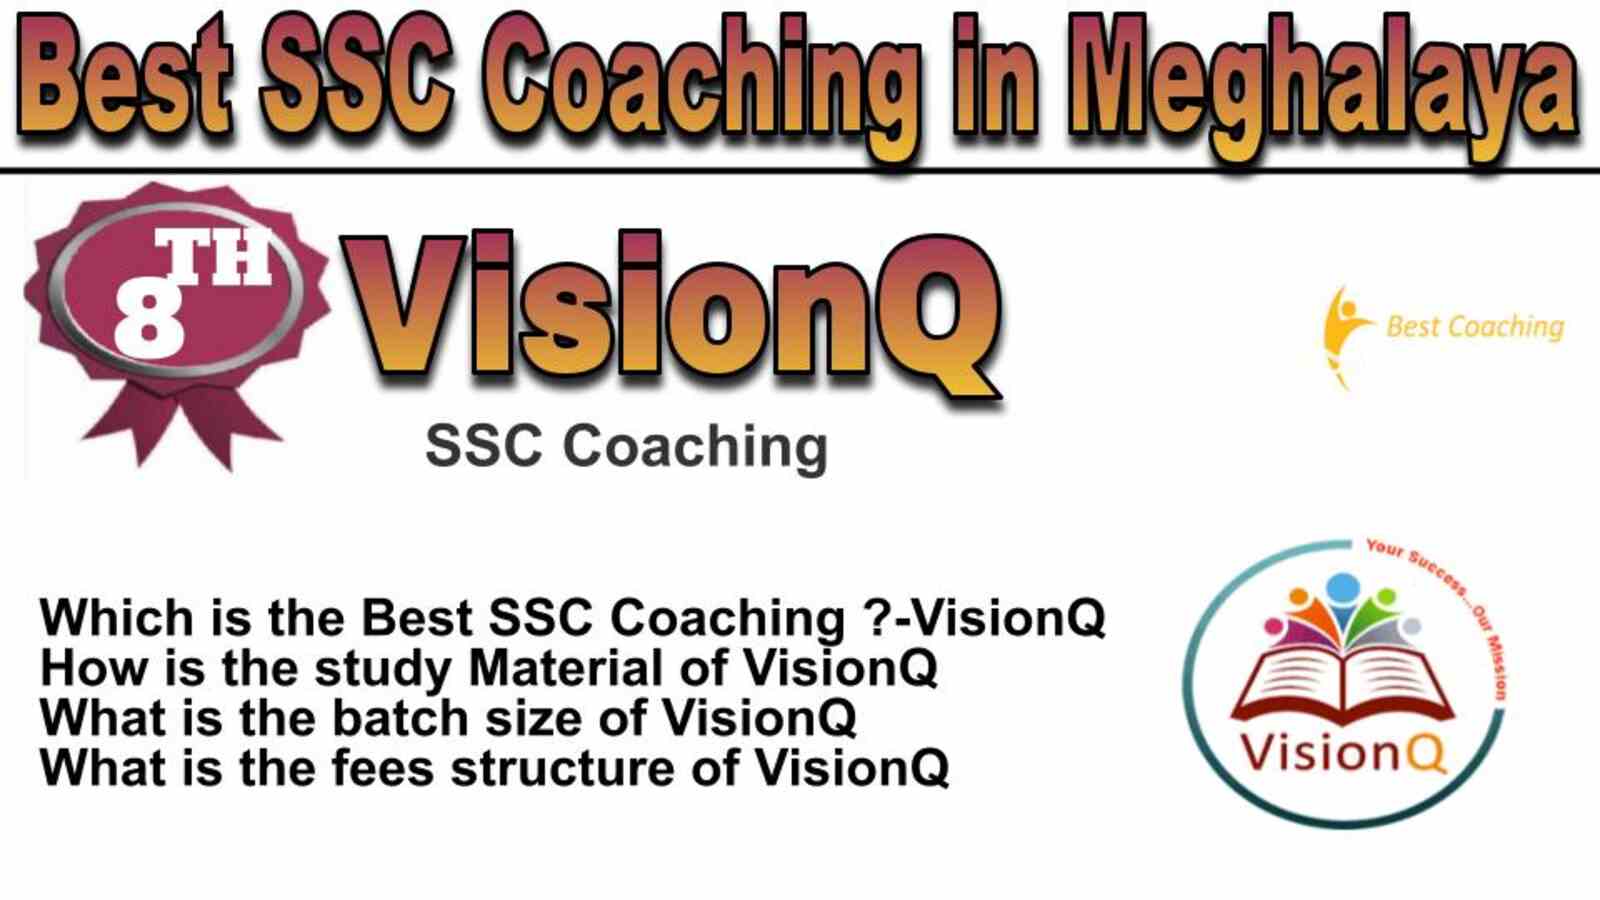 Rank 8 best SSC coaching in Meghalaya